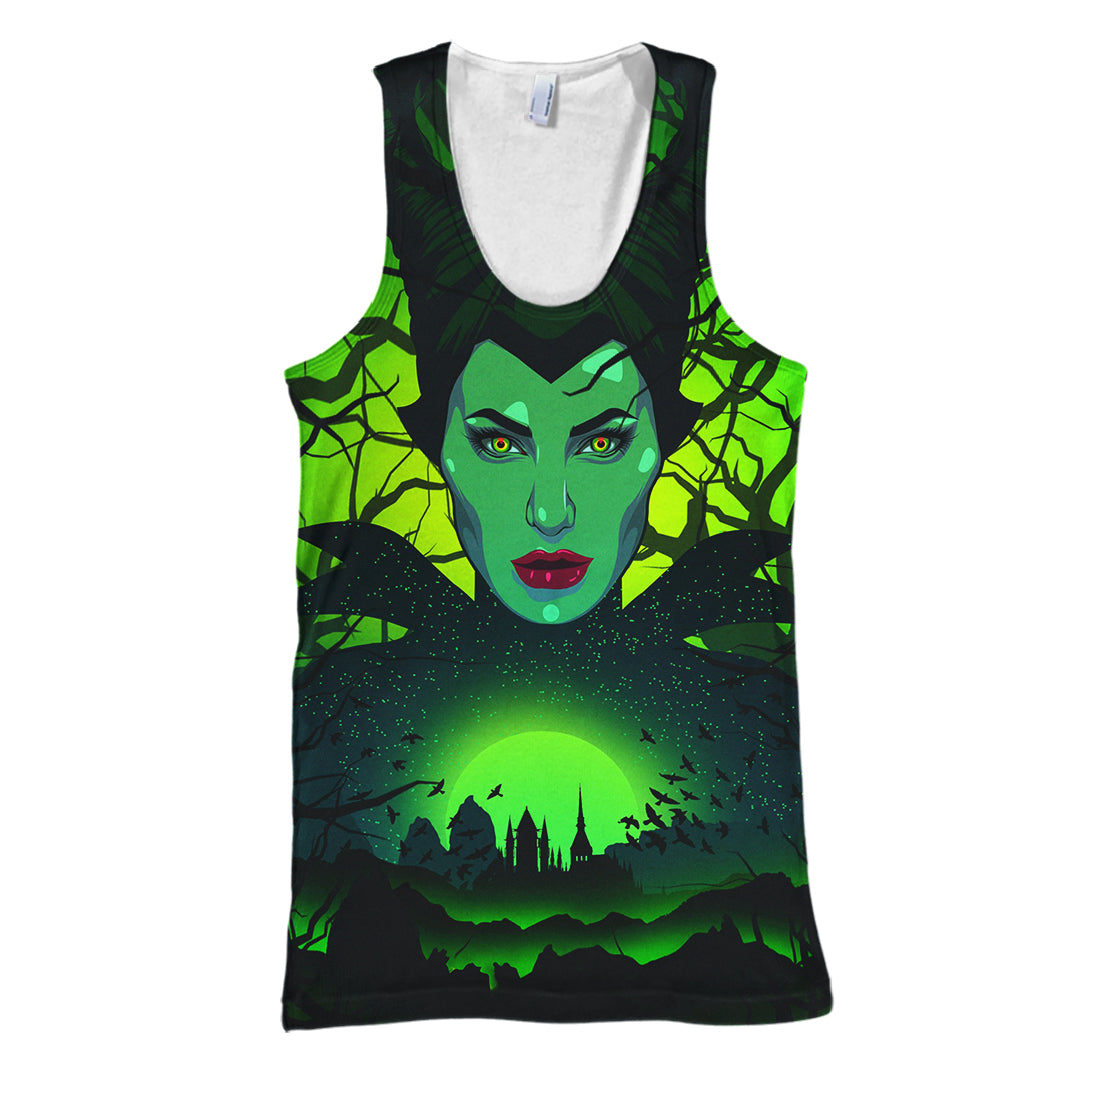 Unifinz DN Maleficent T-shirt 3D Print Maleficent Green T-shirt Awesome DN Maleficent Hoodie Sweater Tank 2022